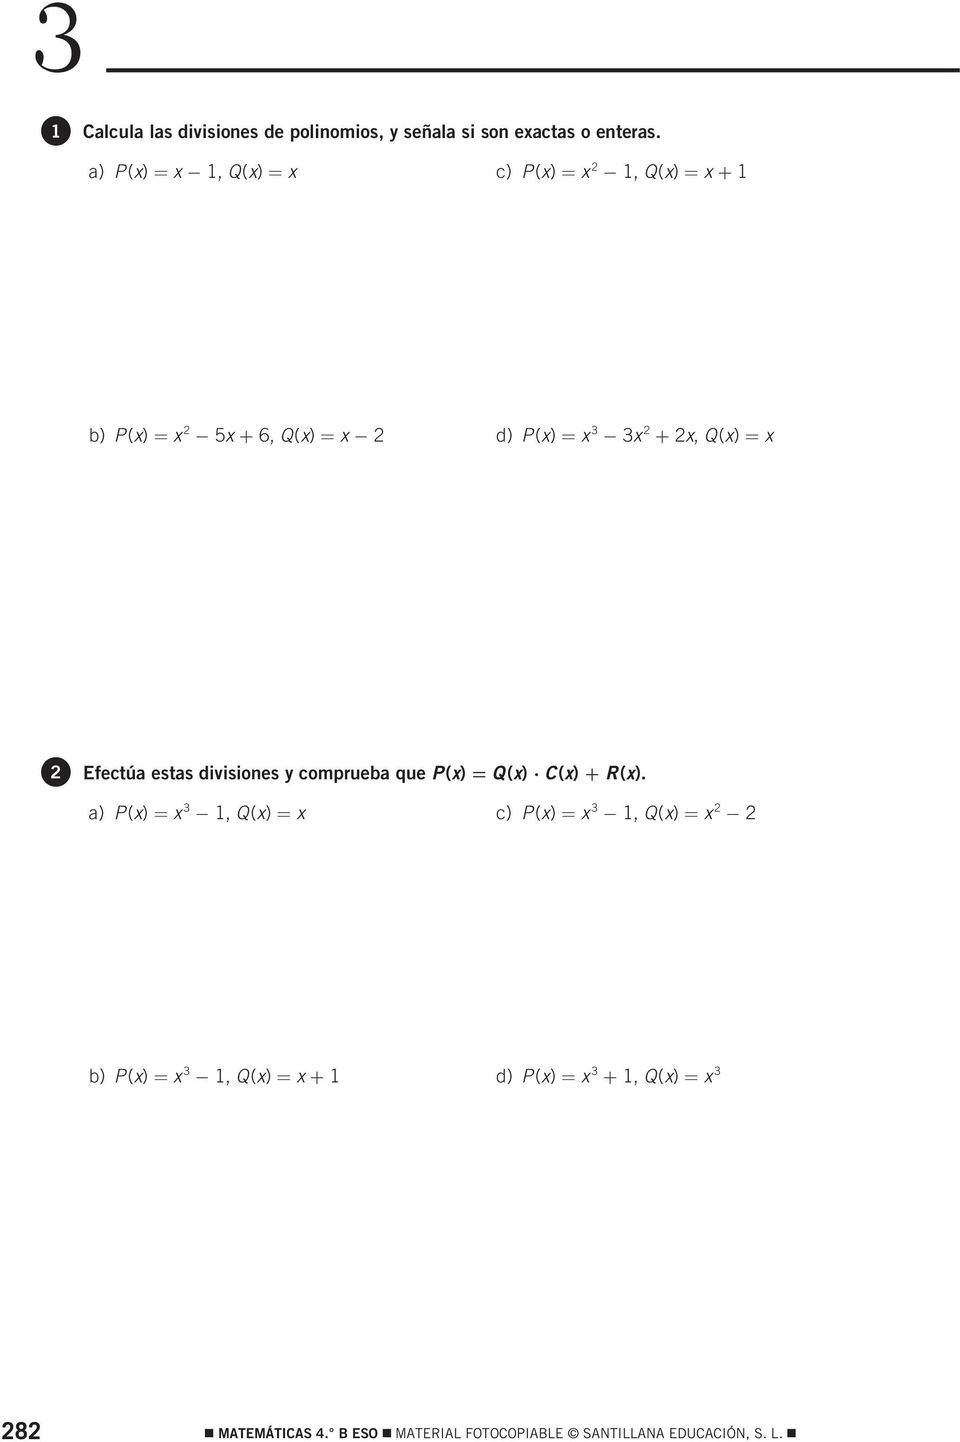 Q(x) = x 2 Efectúa estas divisiones y comprueba que P(x) = Q(x) C(x) + R(x).